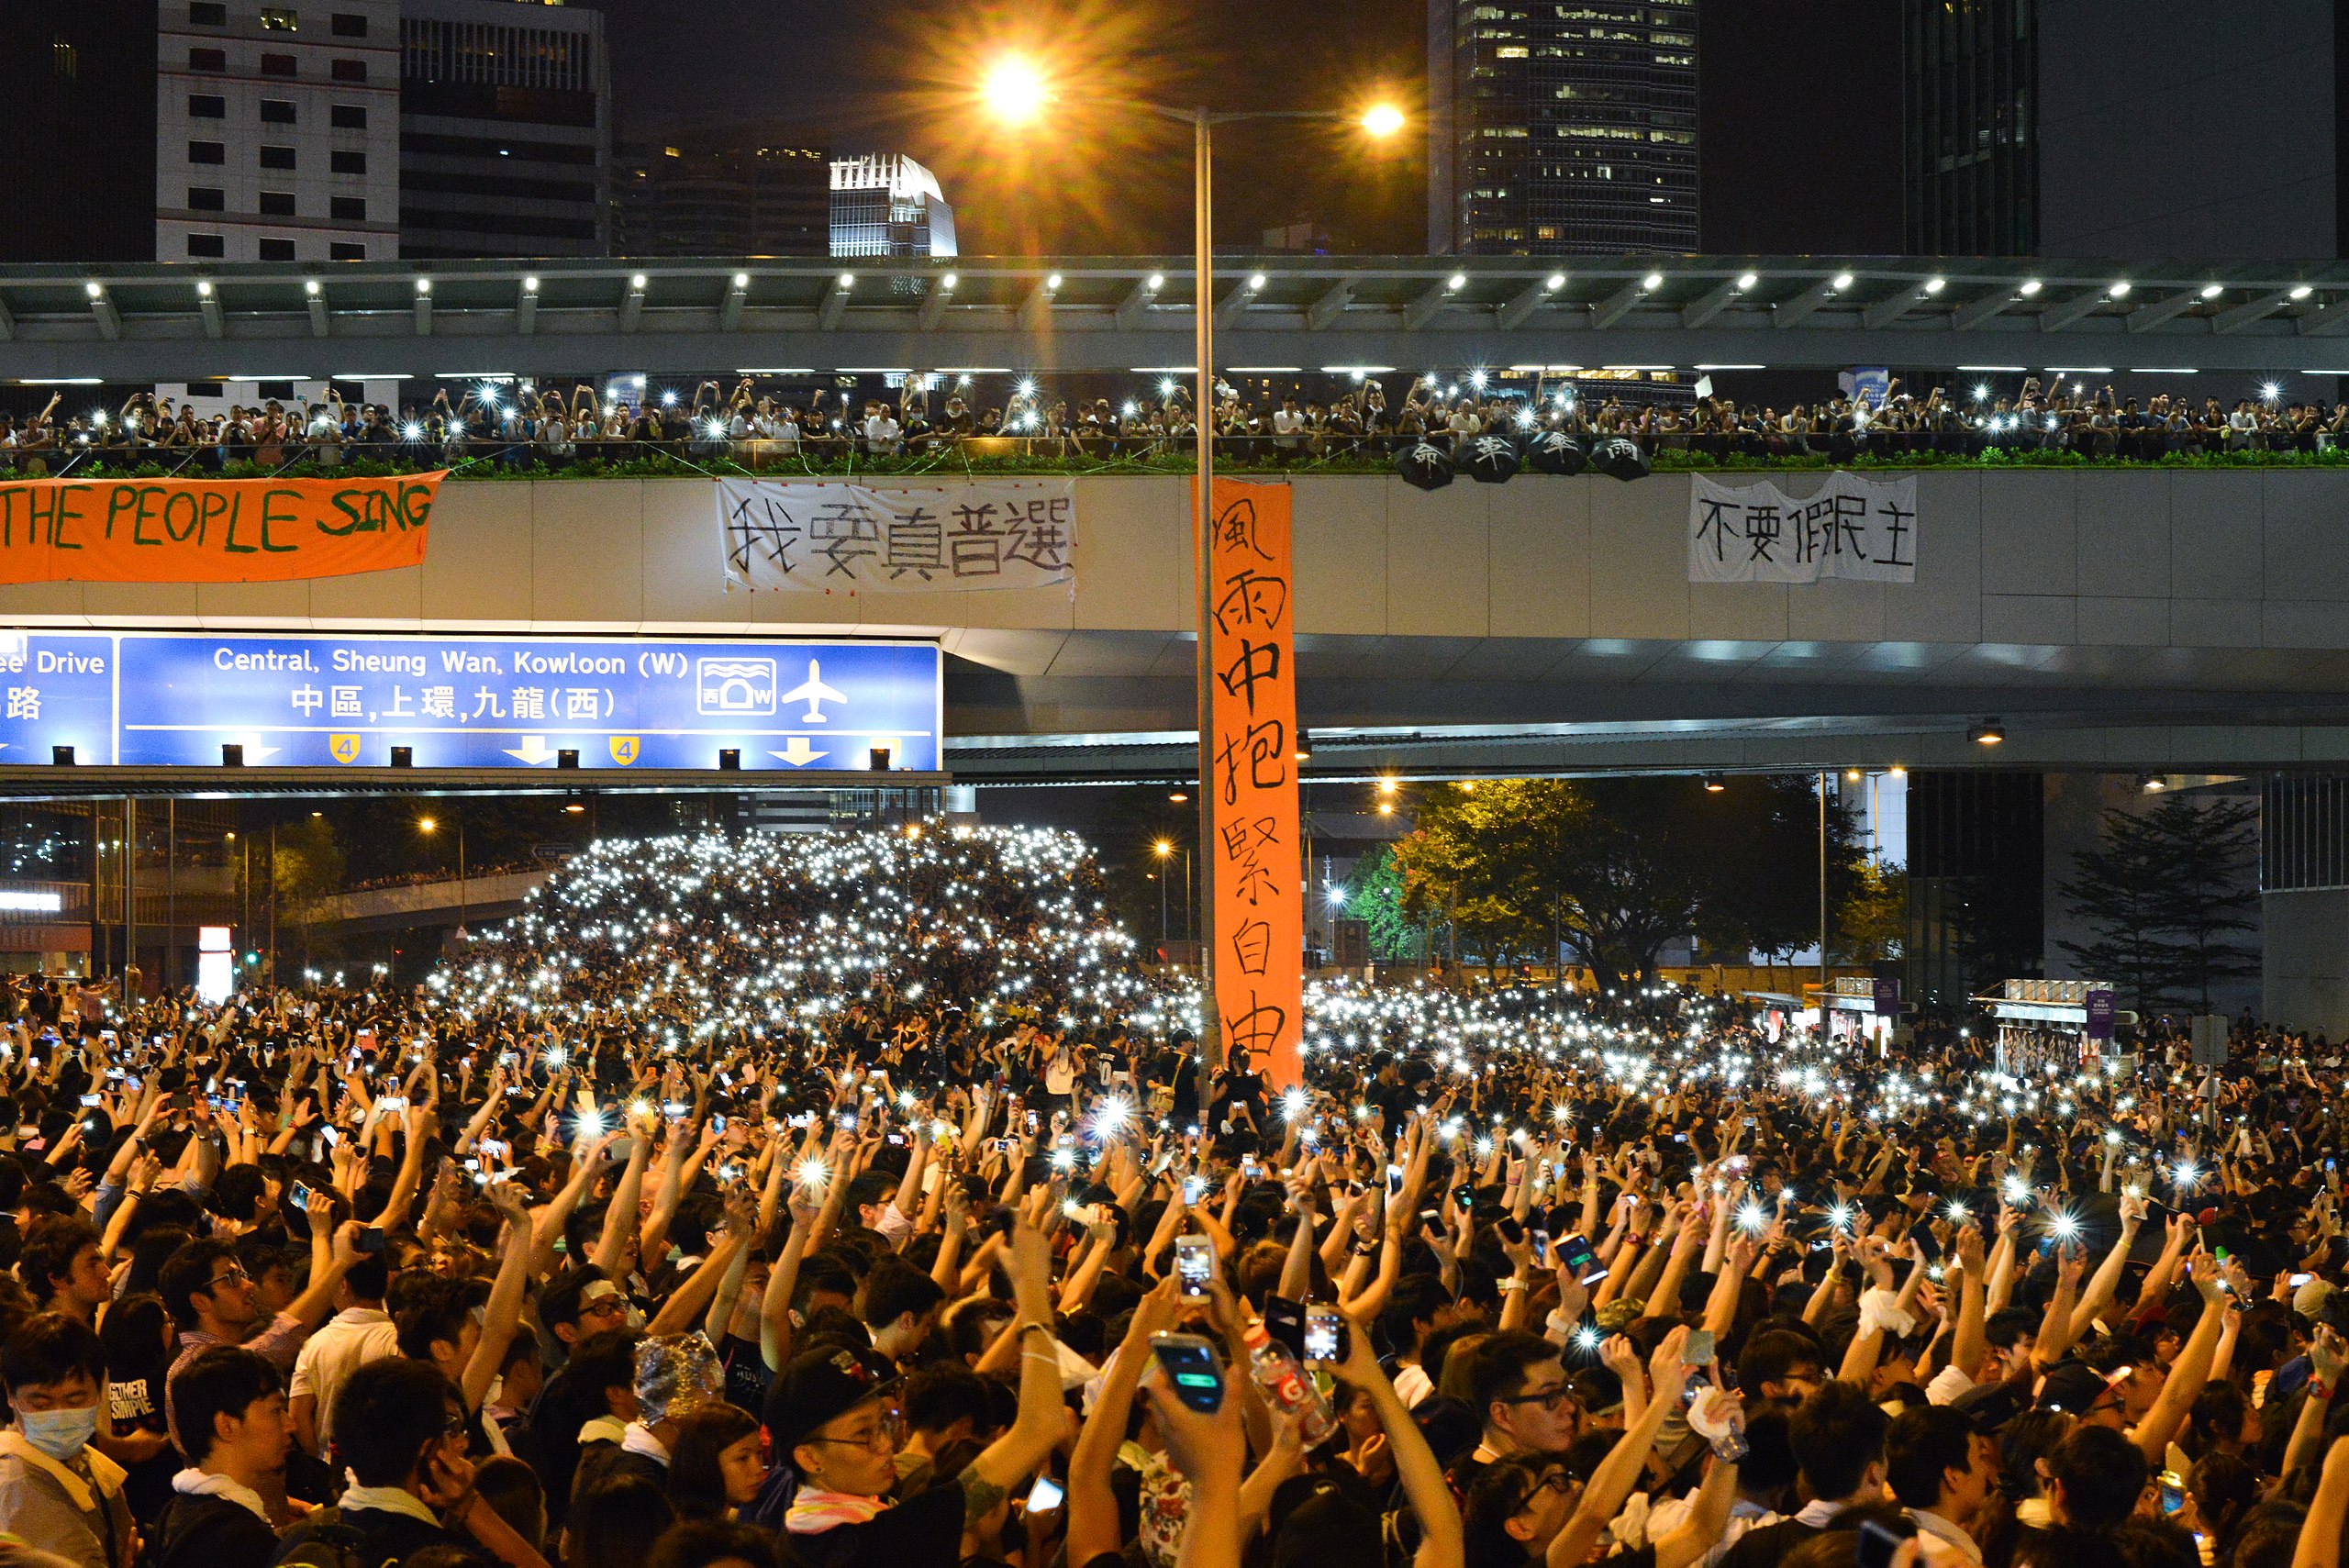 警方采取武力驱散后，数以万计的市民占领金钟干道，并亮起手机灯光